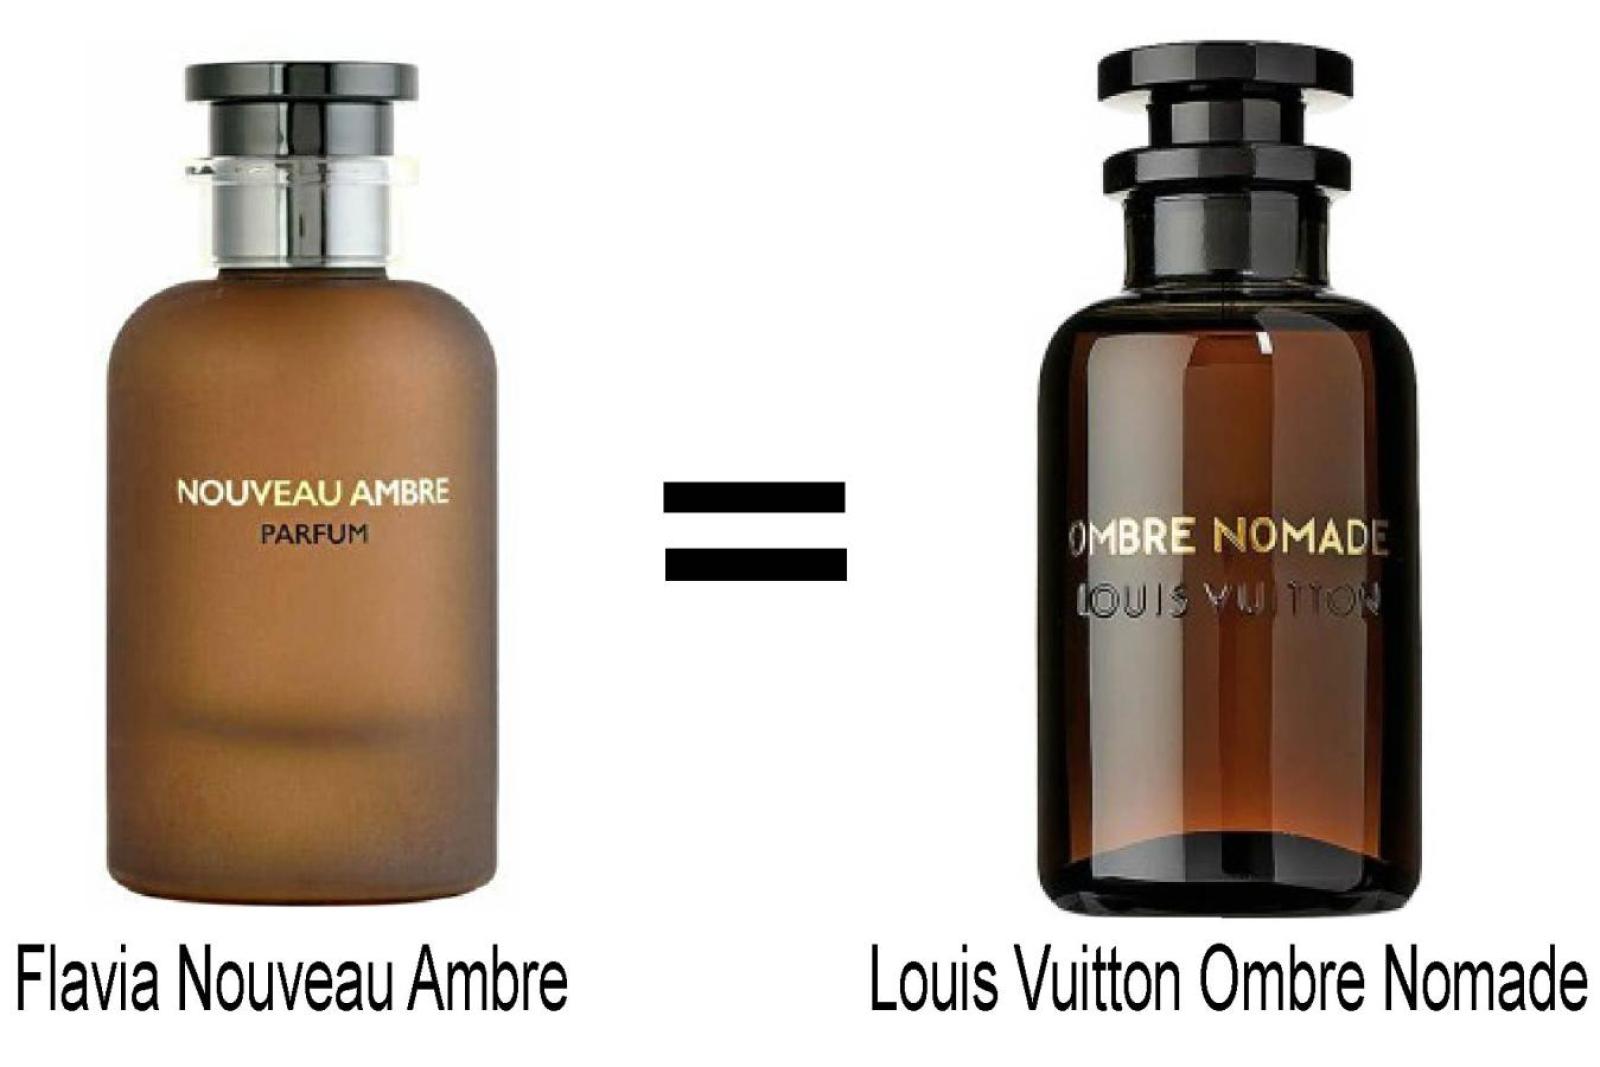 Nouveau Ambre by Flavia Parfum (100 ml)